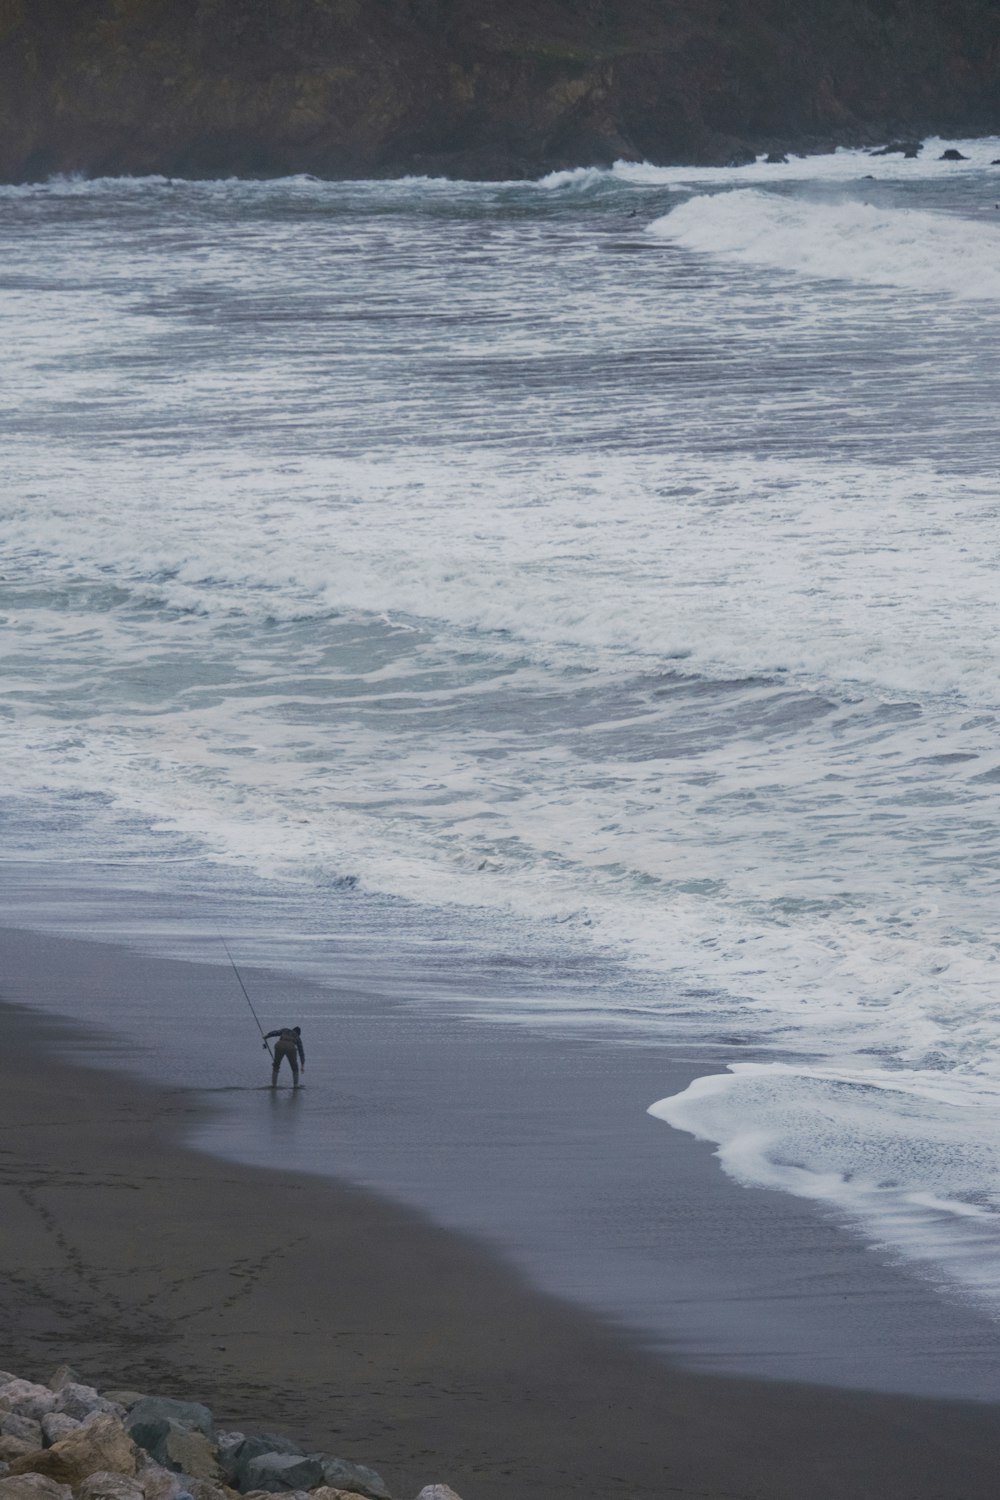 a person walking a dog on a beach near the ocean